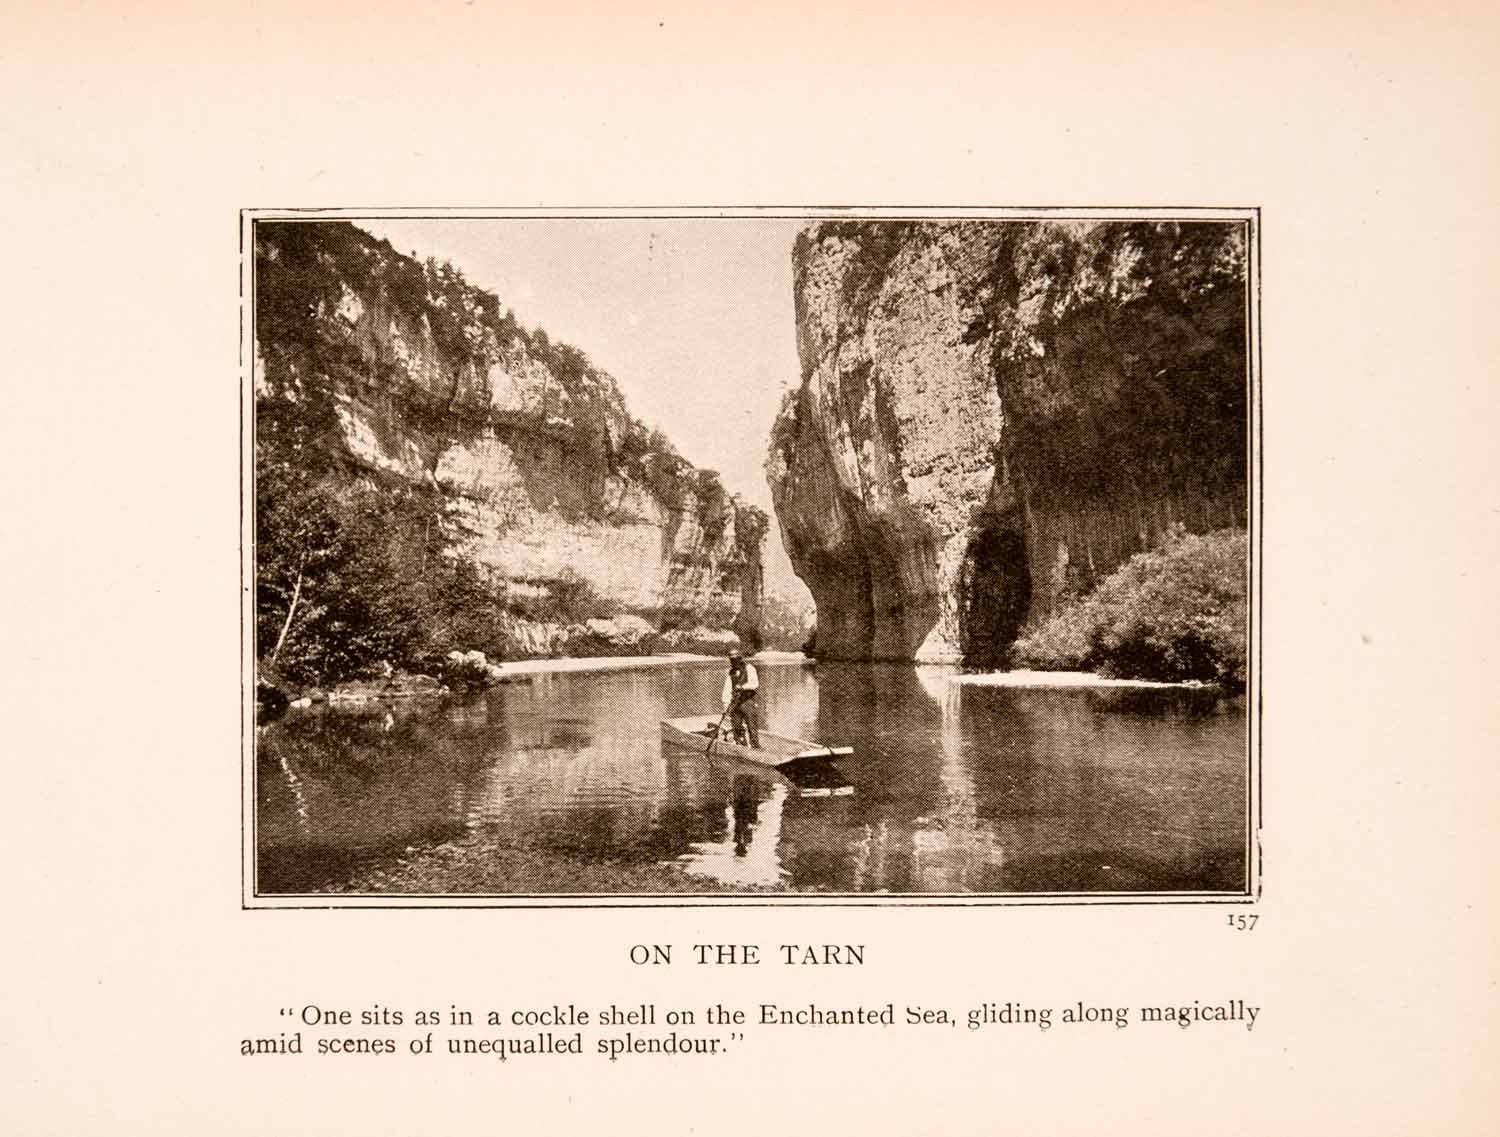 1908 Halftone Print River Tarn Boat Canoe Valley Rock Canyon France Pole XGLA3